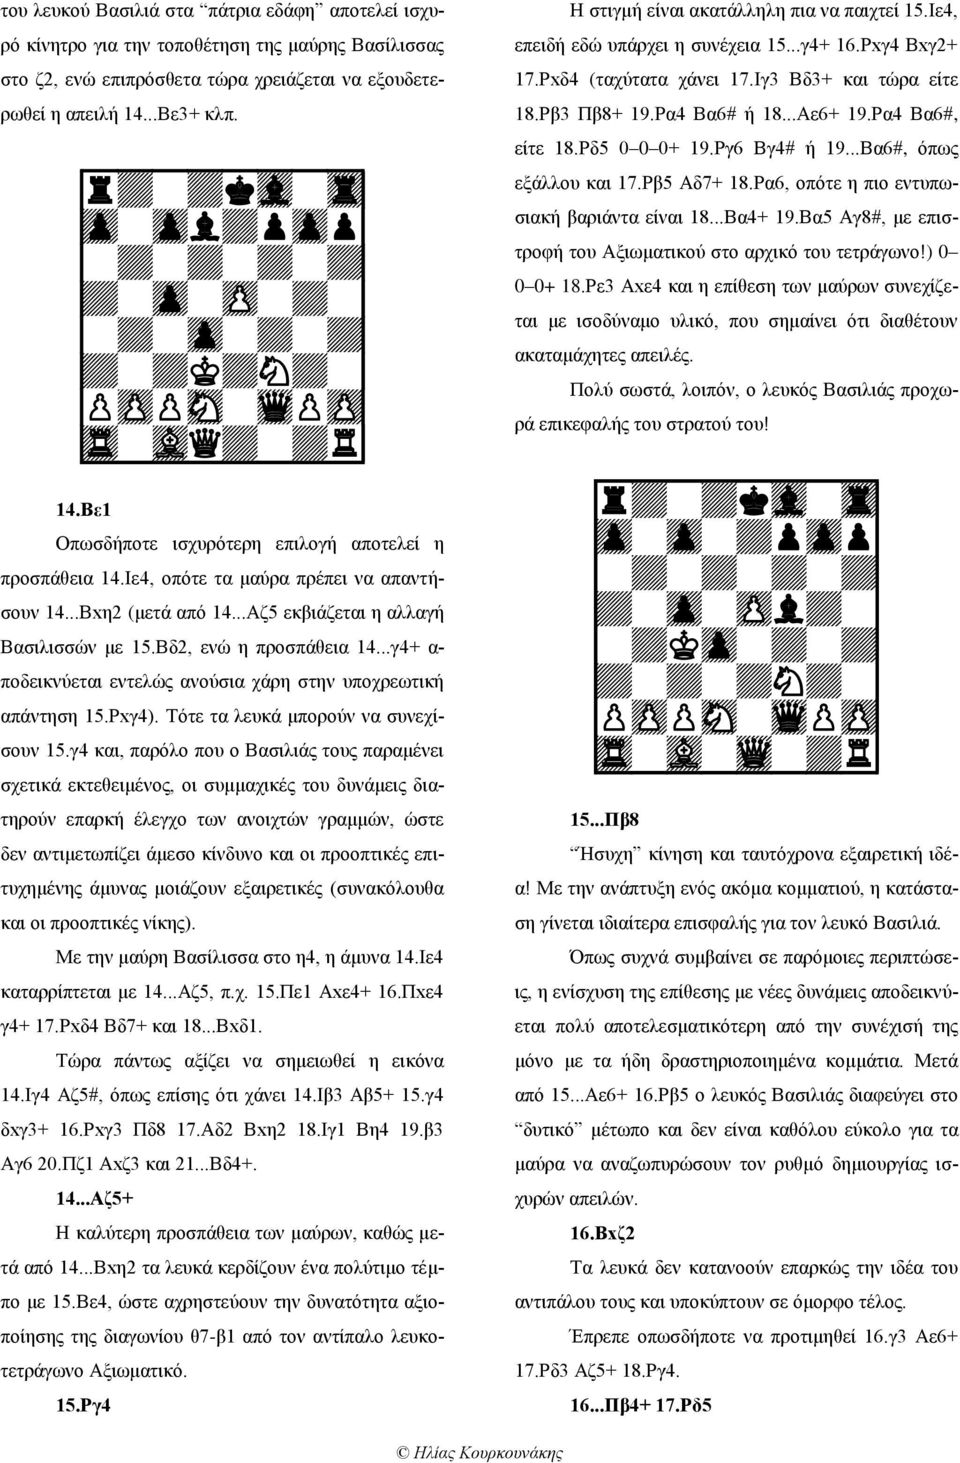 ..Αζ5 εκβιάζεται η αλλαγή Βασιλισσών με 15.Βδ2, ενώ η προσπάθεια 14...γ4+ α- ποδεικνύεται εντελώς ανούσια χάρη στην υποχρεωτική απάντηση 15.Ρxγ4). Τότε τα λευκά μπορούν να συνεχίσουν 15.